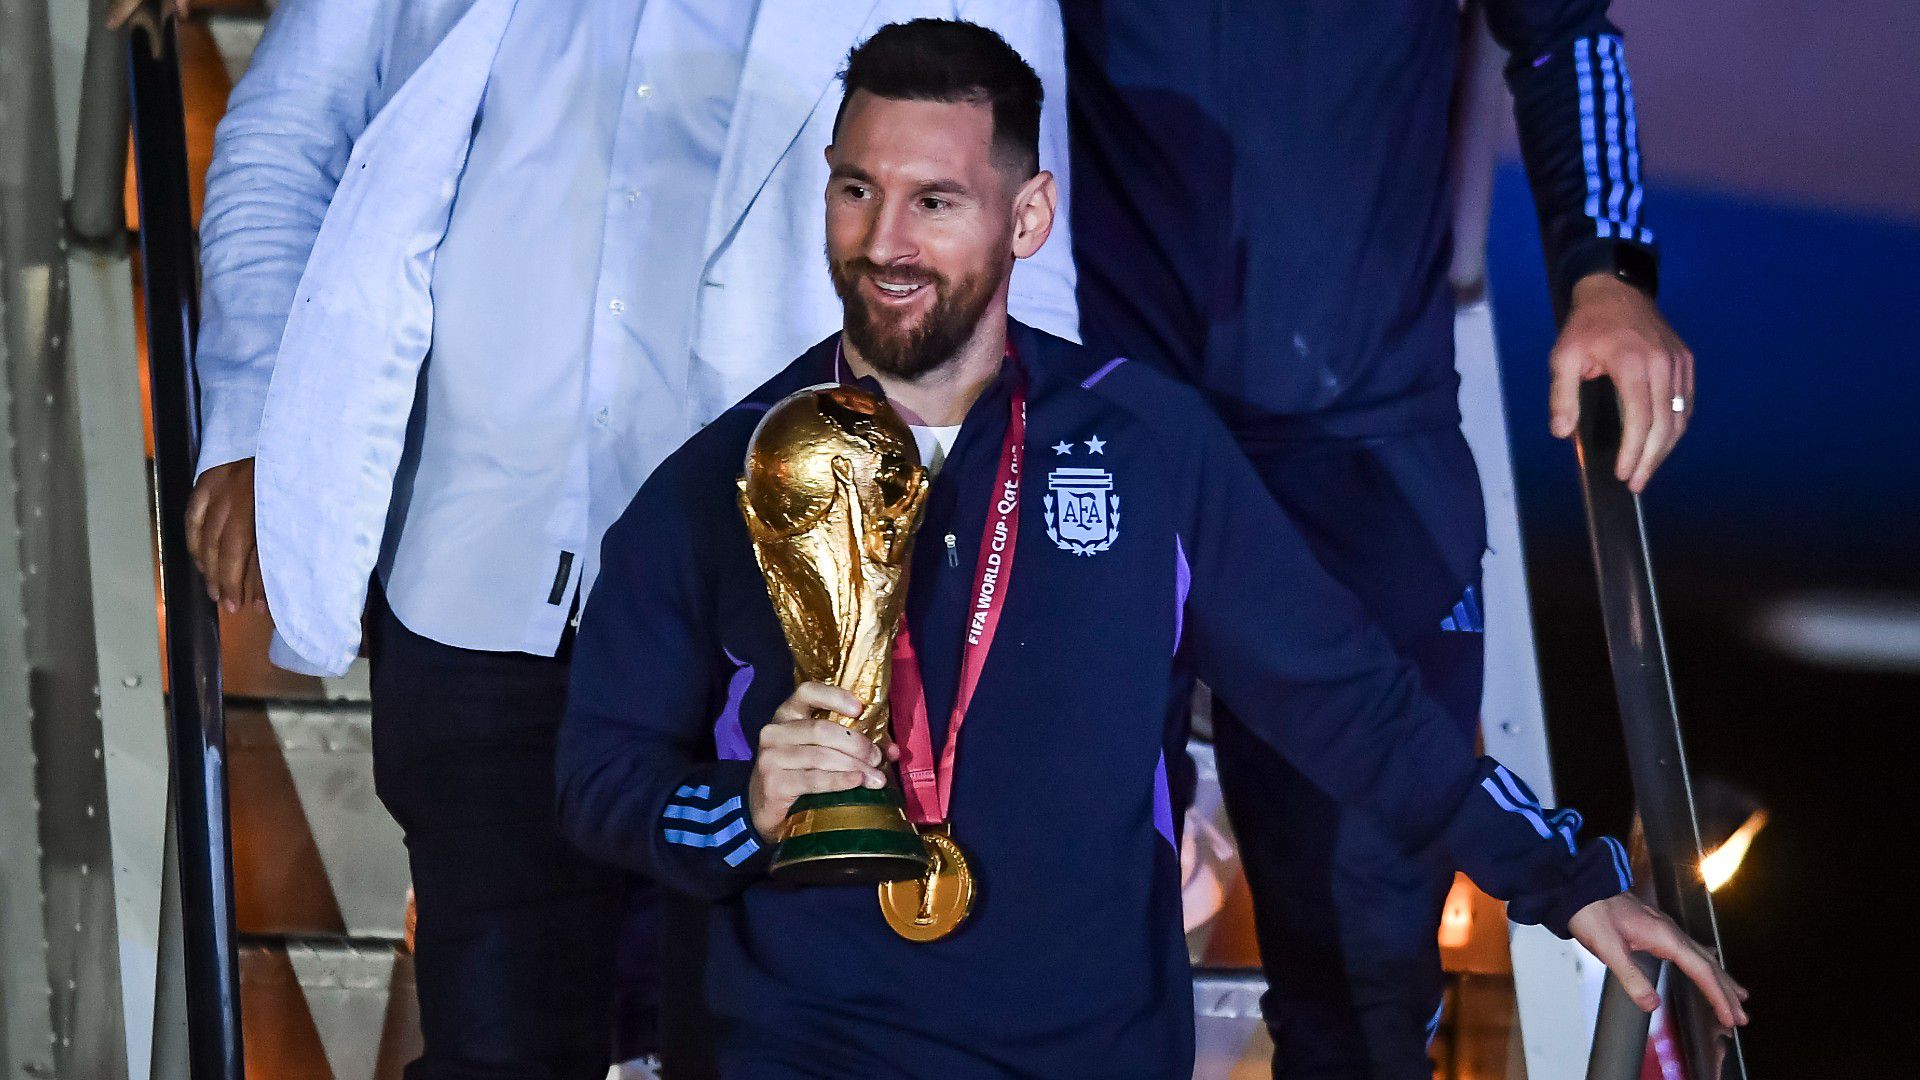 VIDEÓ: Messi üzent a vb megnyerése után – a magyar válogatott is szerepet kapott